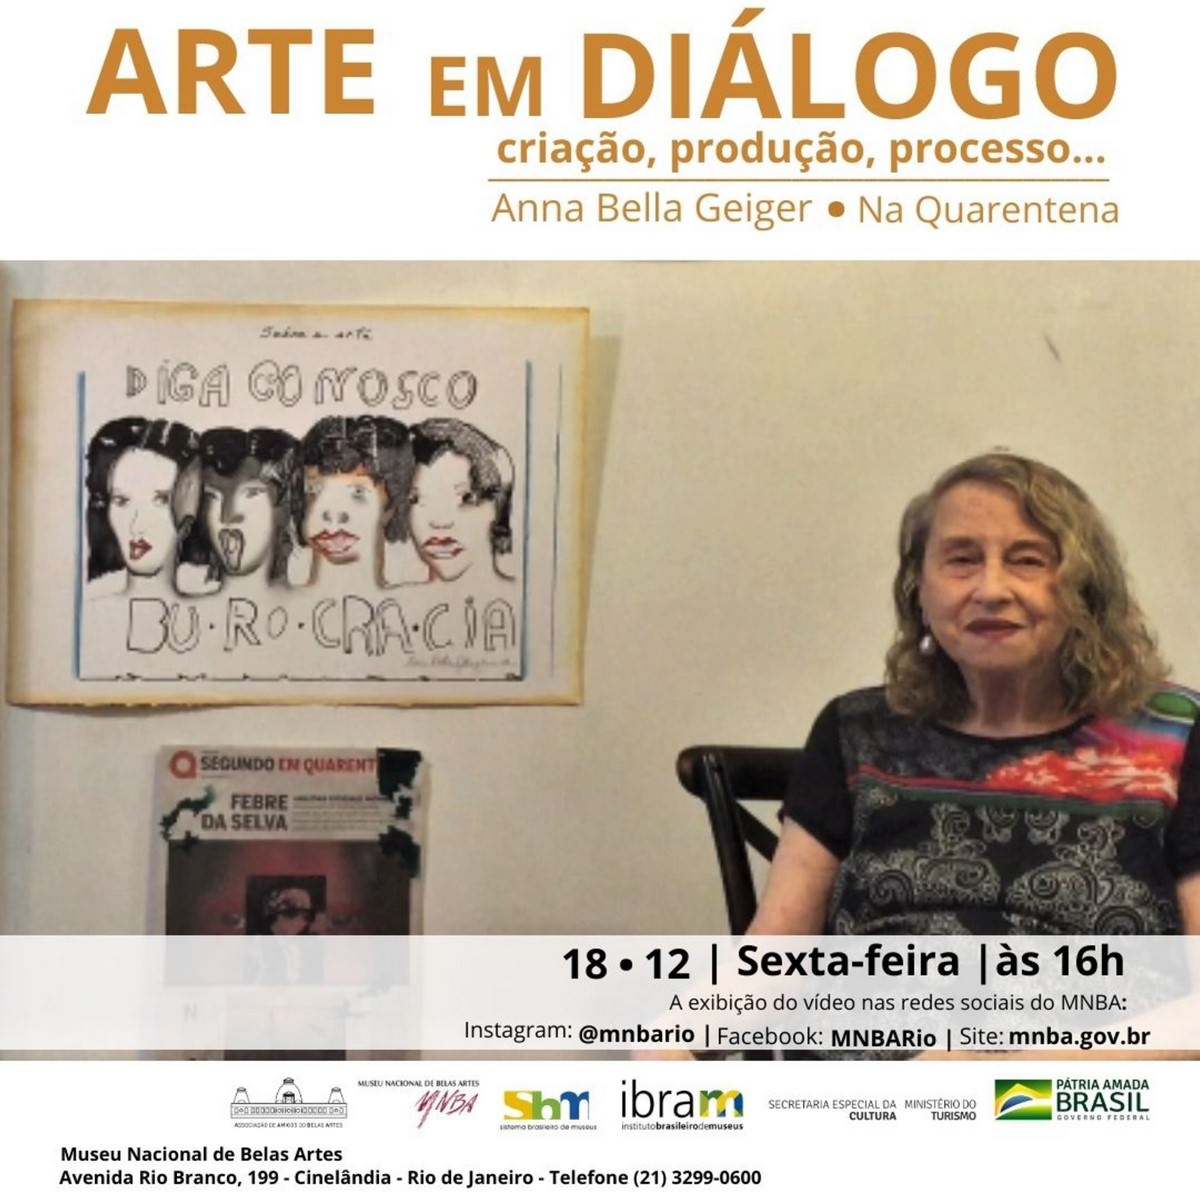 Projet Art en dialogue, en quarantaine, com Annabella Geiger, dans le MNBA, Flyer. Divulgation.